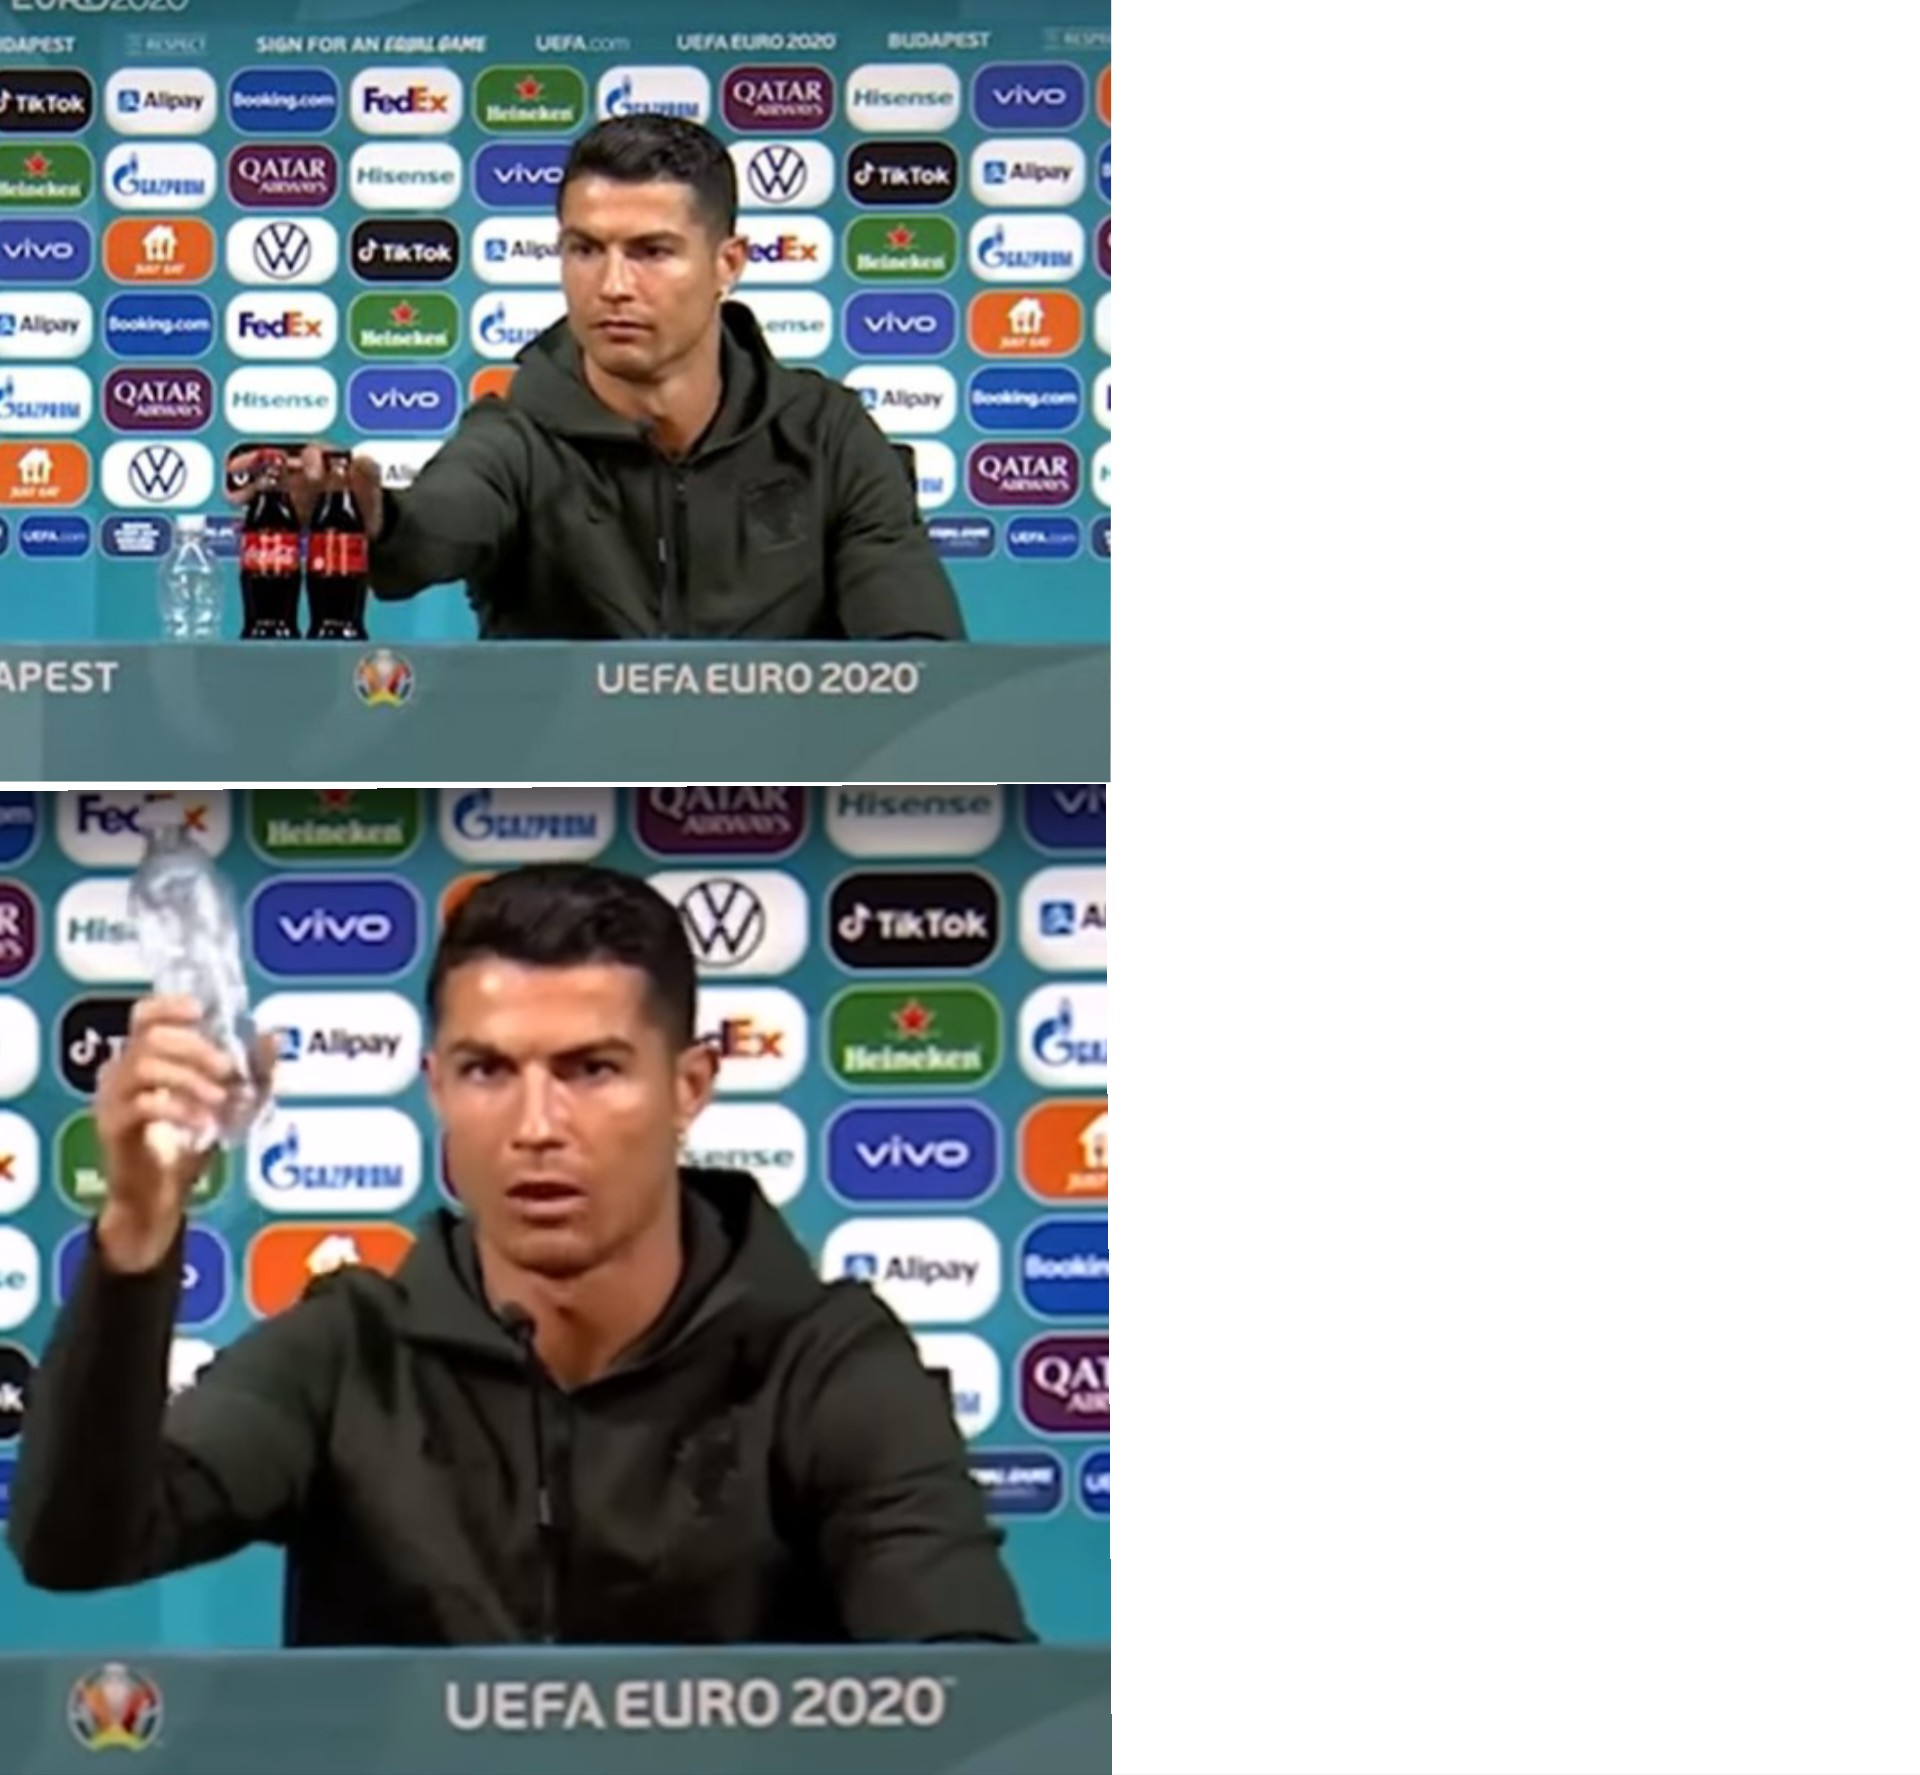 High Quality Ronaldo Coca-Cola Blank Meme Template